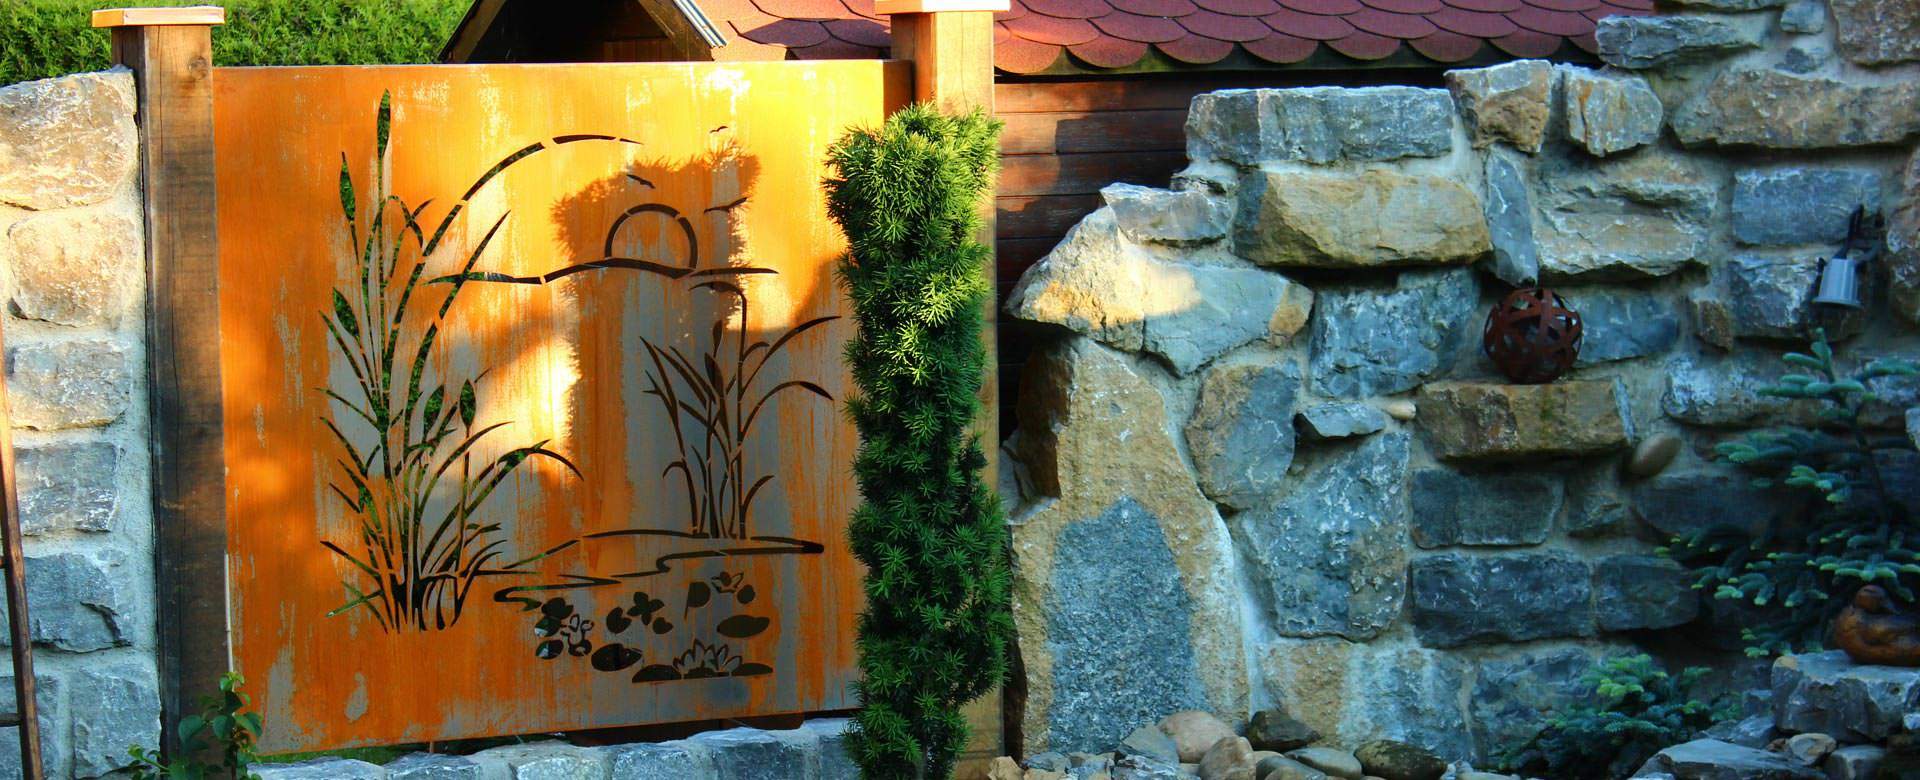 Weiden Deko Garten Luxus 40 Neu Holz Sichtschutz Garten Das Beste Von